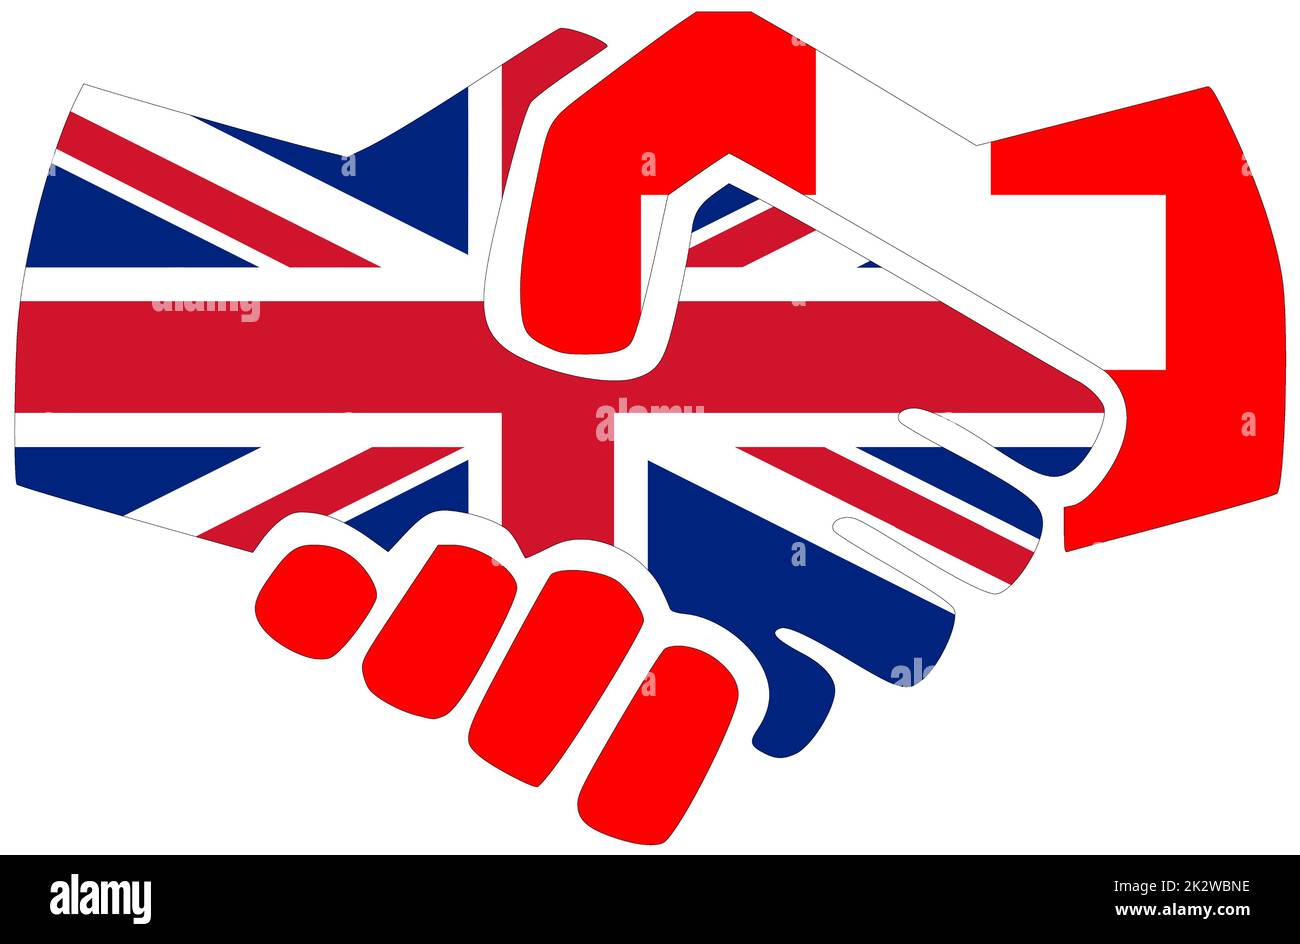 UK - Switzerland : Handshake, symbol of agreement or friendship Stock Photo